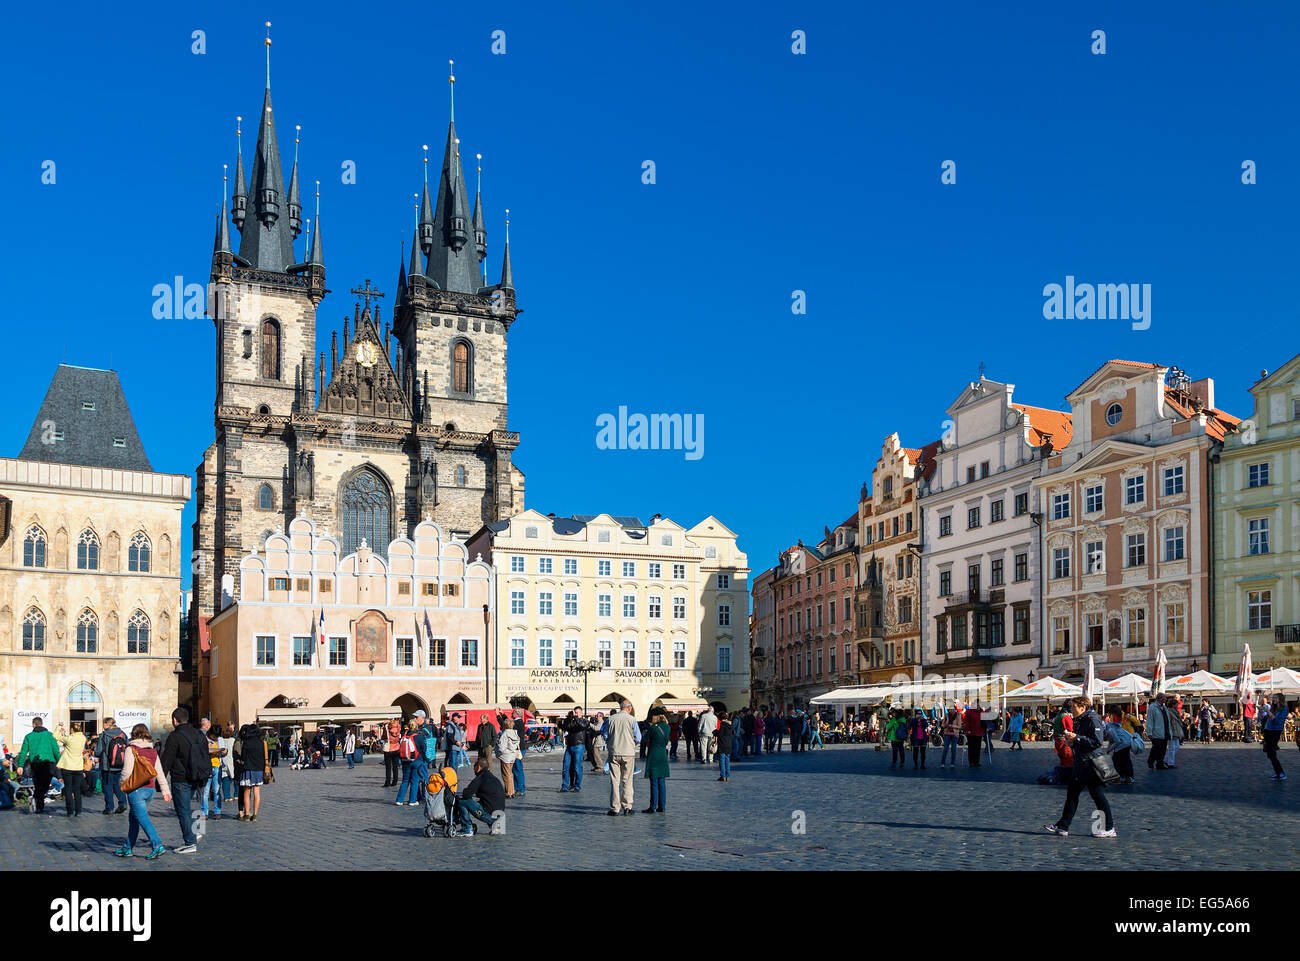 Praga, Staromestske nam Square Foto Stock